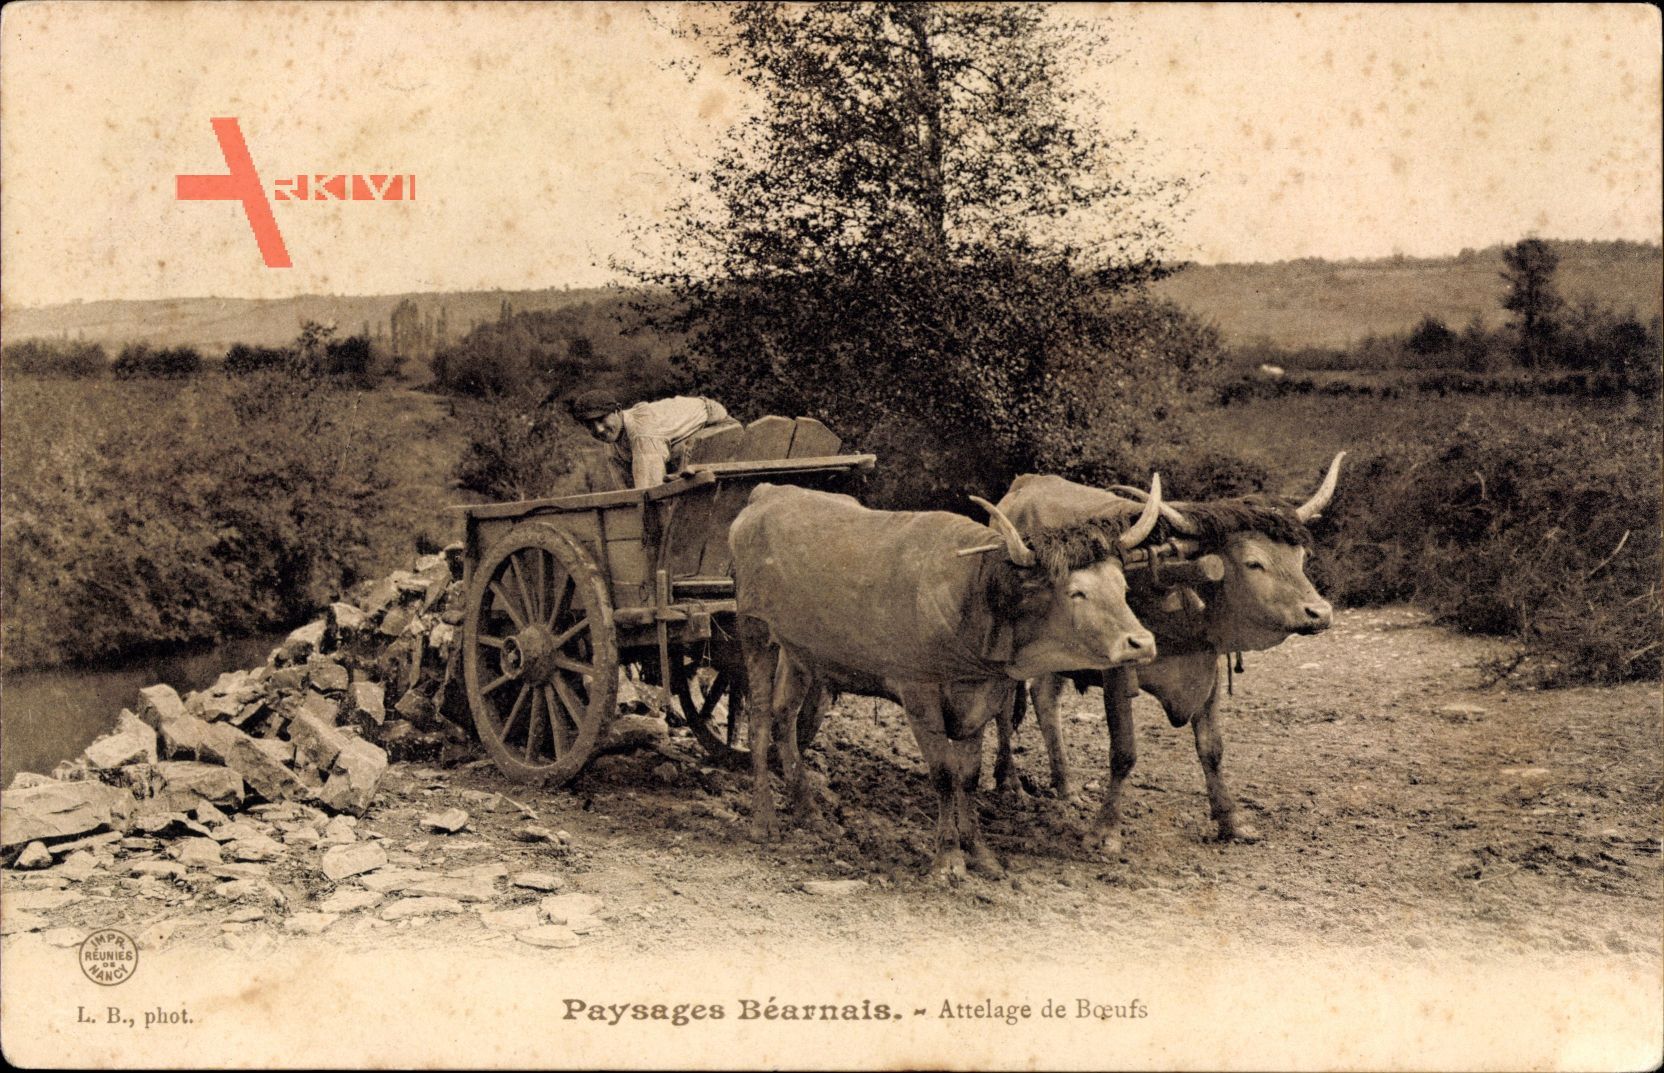 Paysages Béarnais, Attelage de Boeufs, Zugochsen, Karren, Bauer